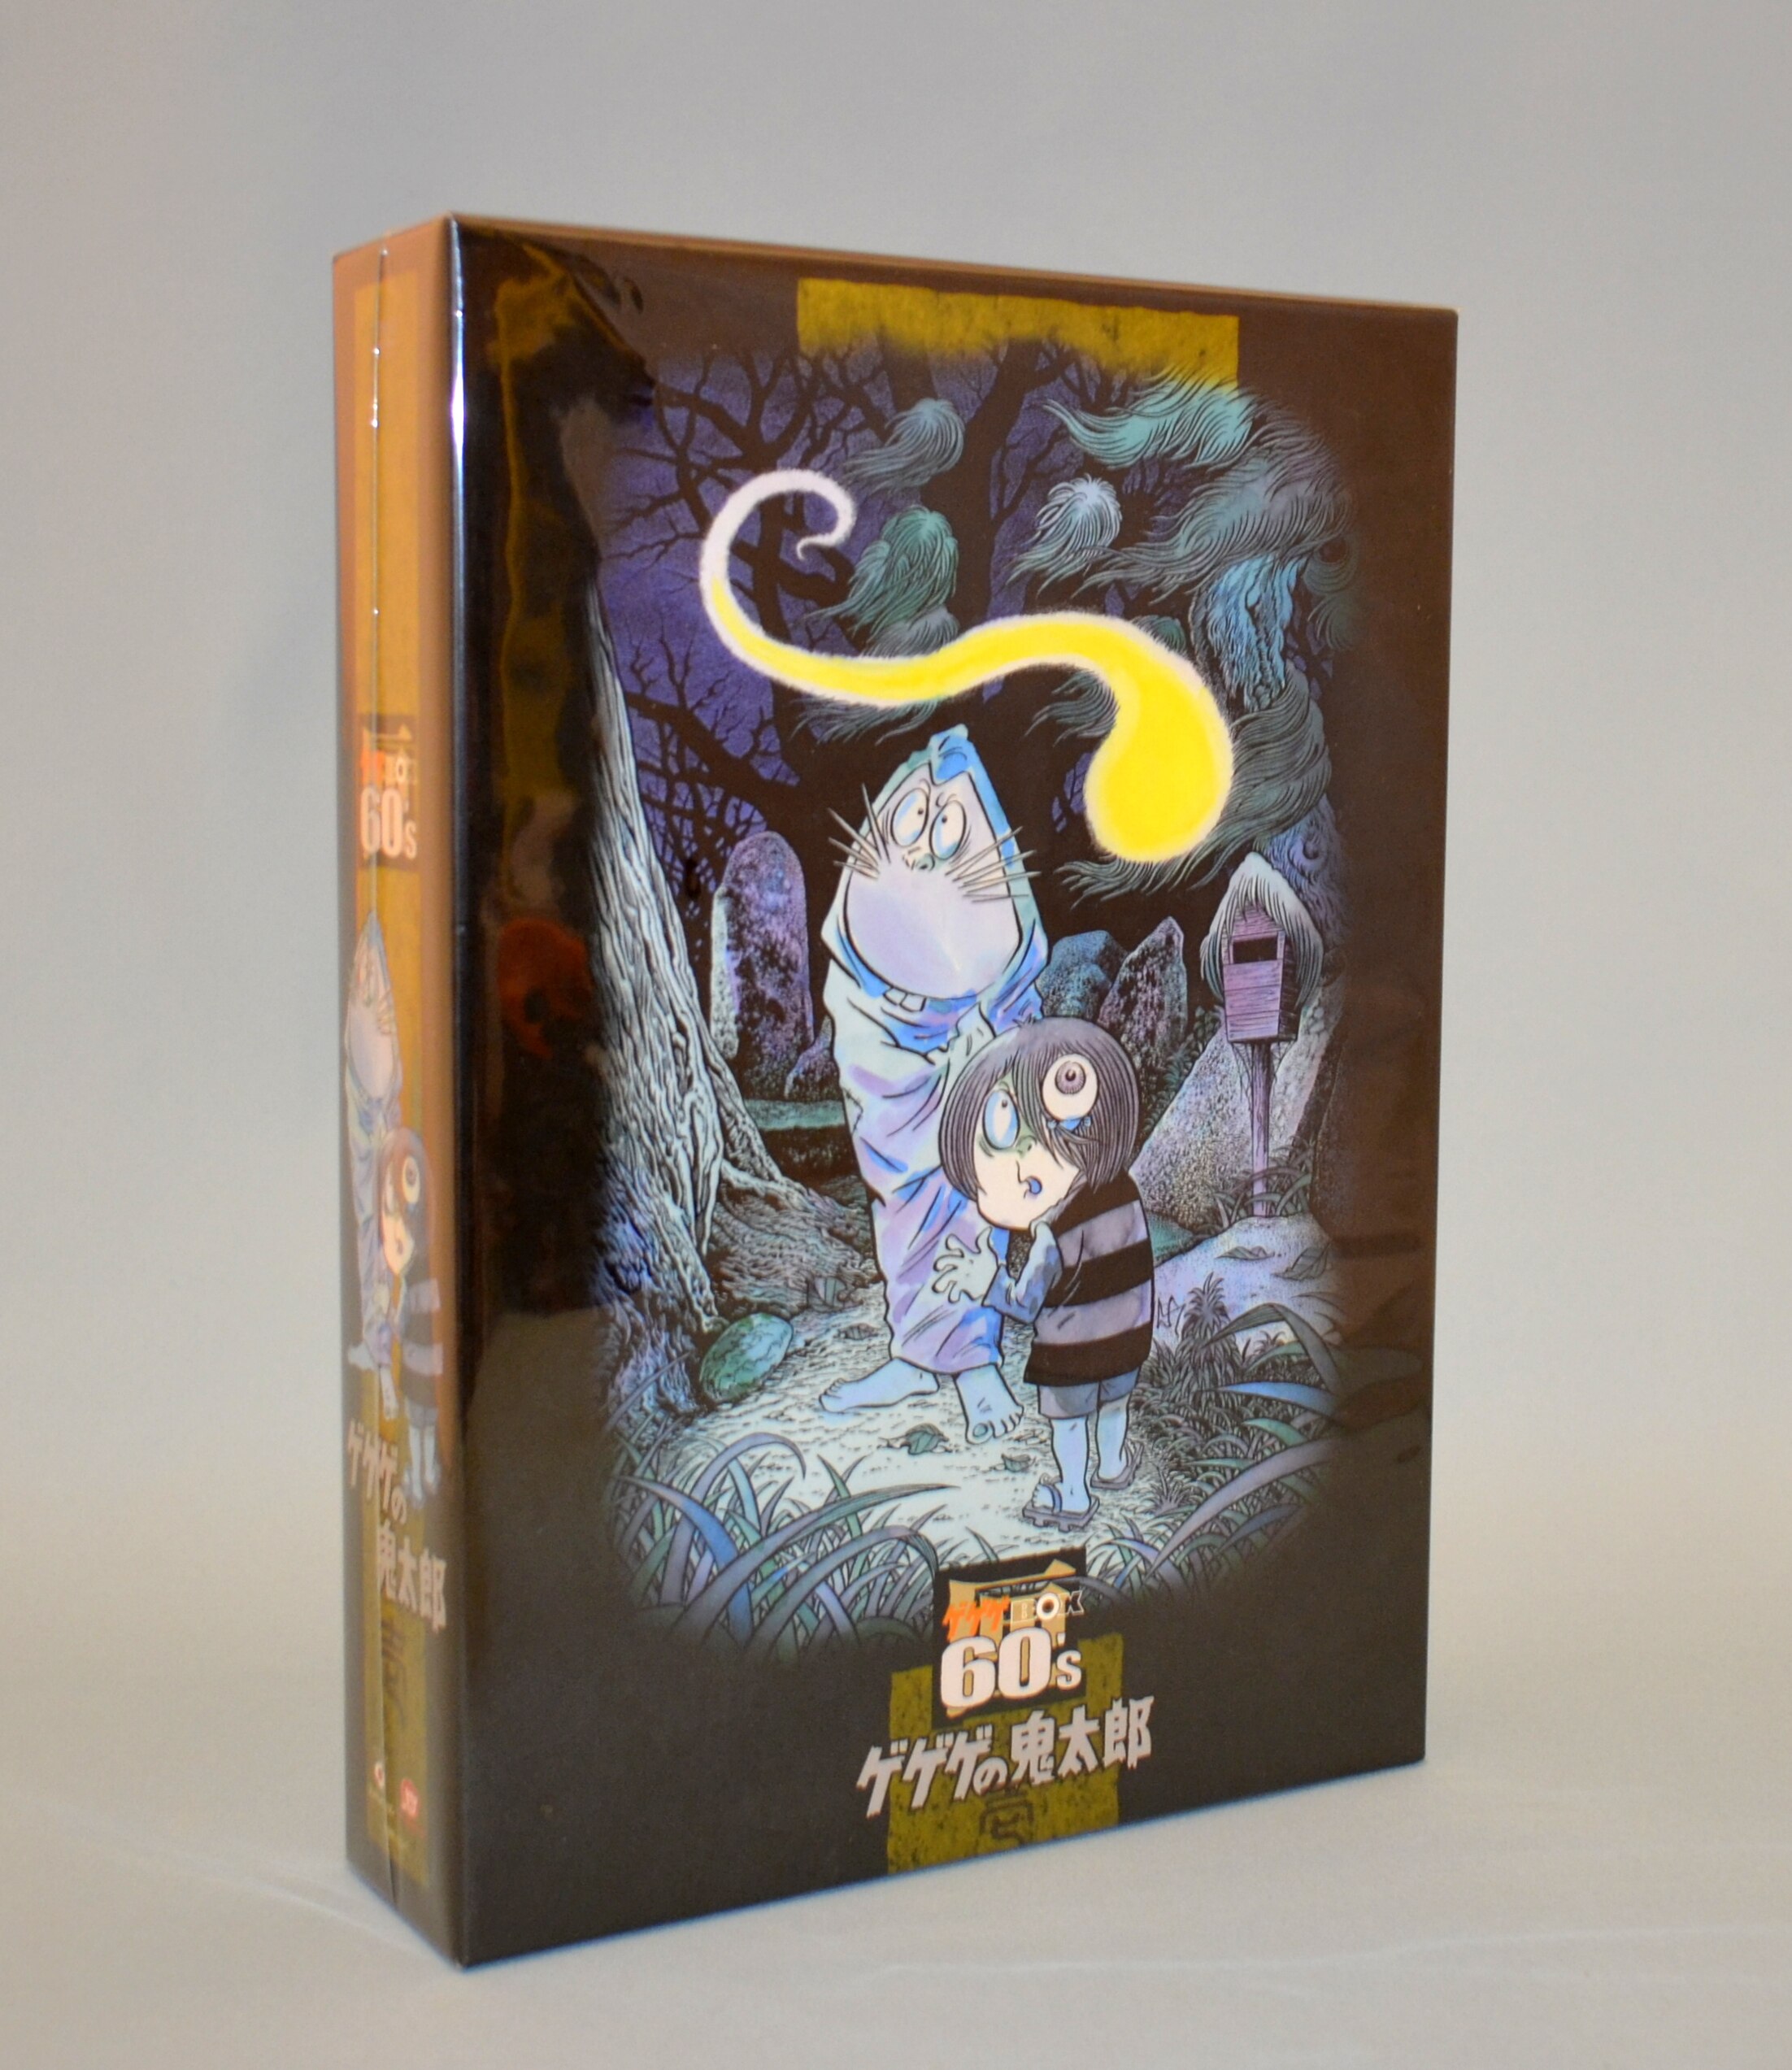 ゲゲゲの鬼太郎 1968 DVD-BOX ゲゲゲBOX60's [完全予約限定生産 